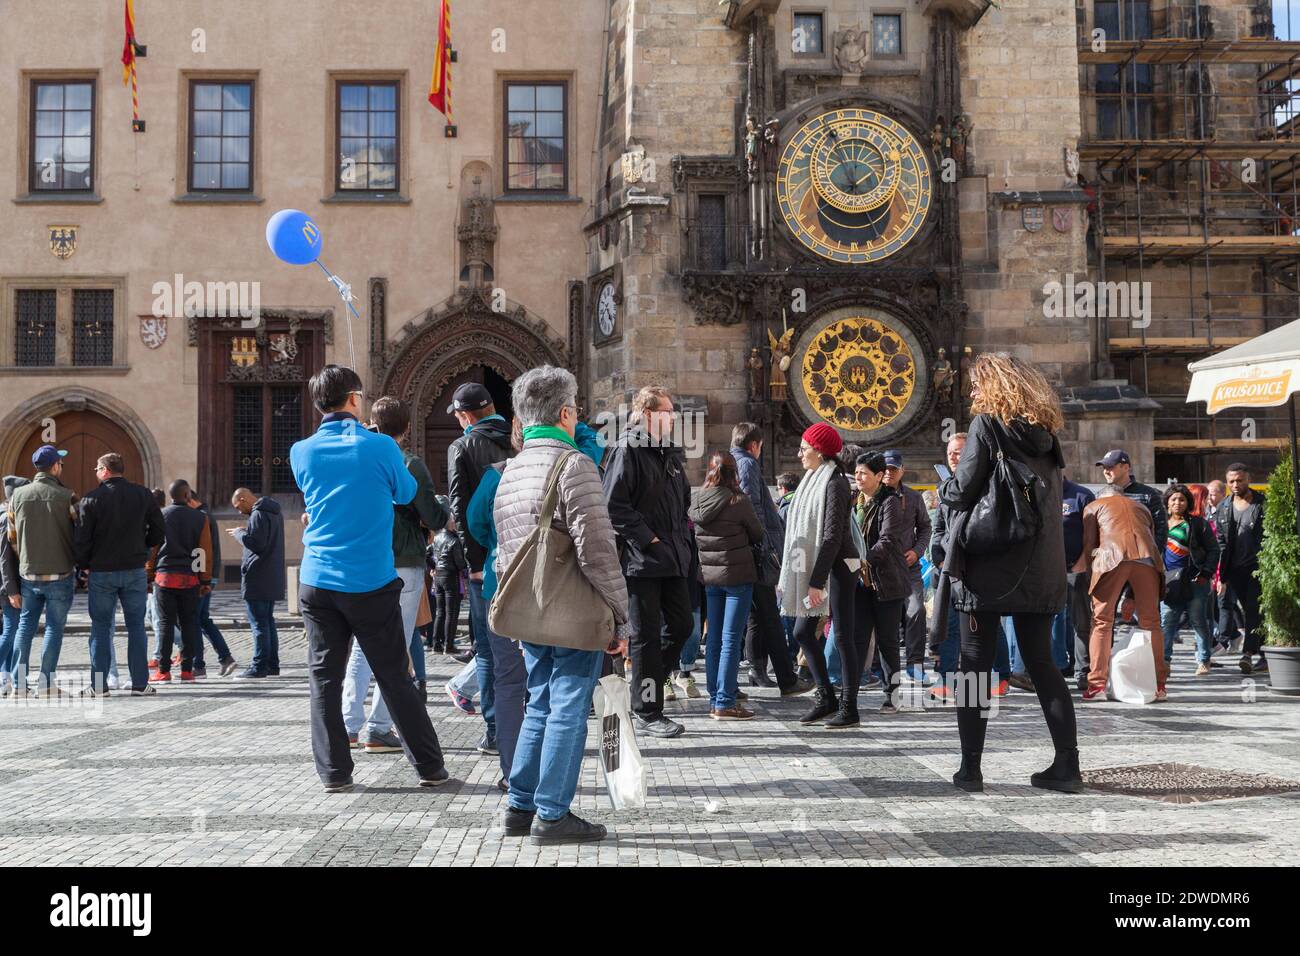 Prag, Tschechische Republik - 2. Mai 2017: Touristen sind in der Nähe der Prager Astronomischen Uhr, oder Prag Orloj. Es ist eine mittelalterliche astronomische Uhr in Stockfoto